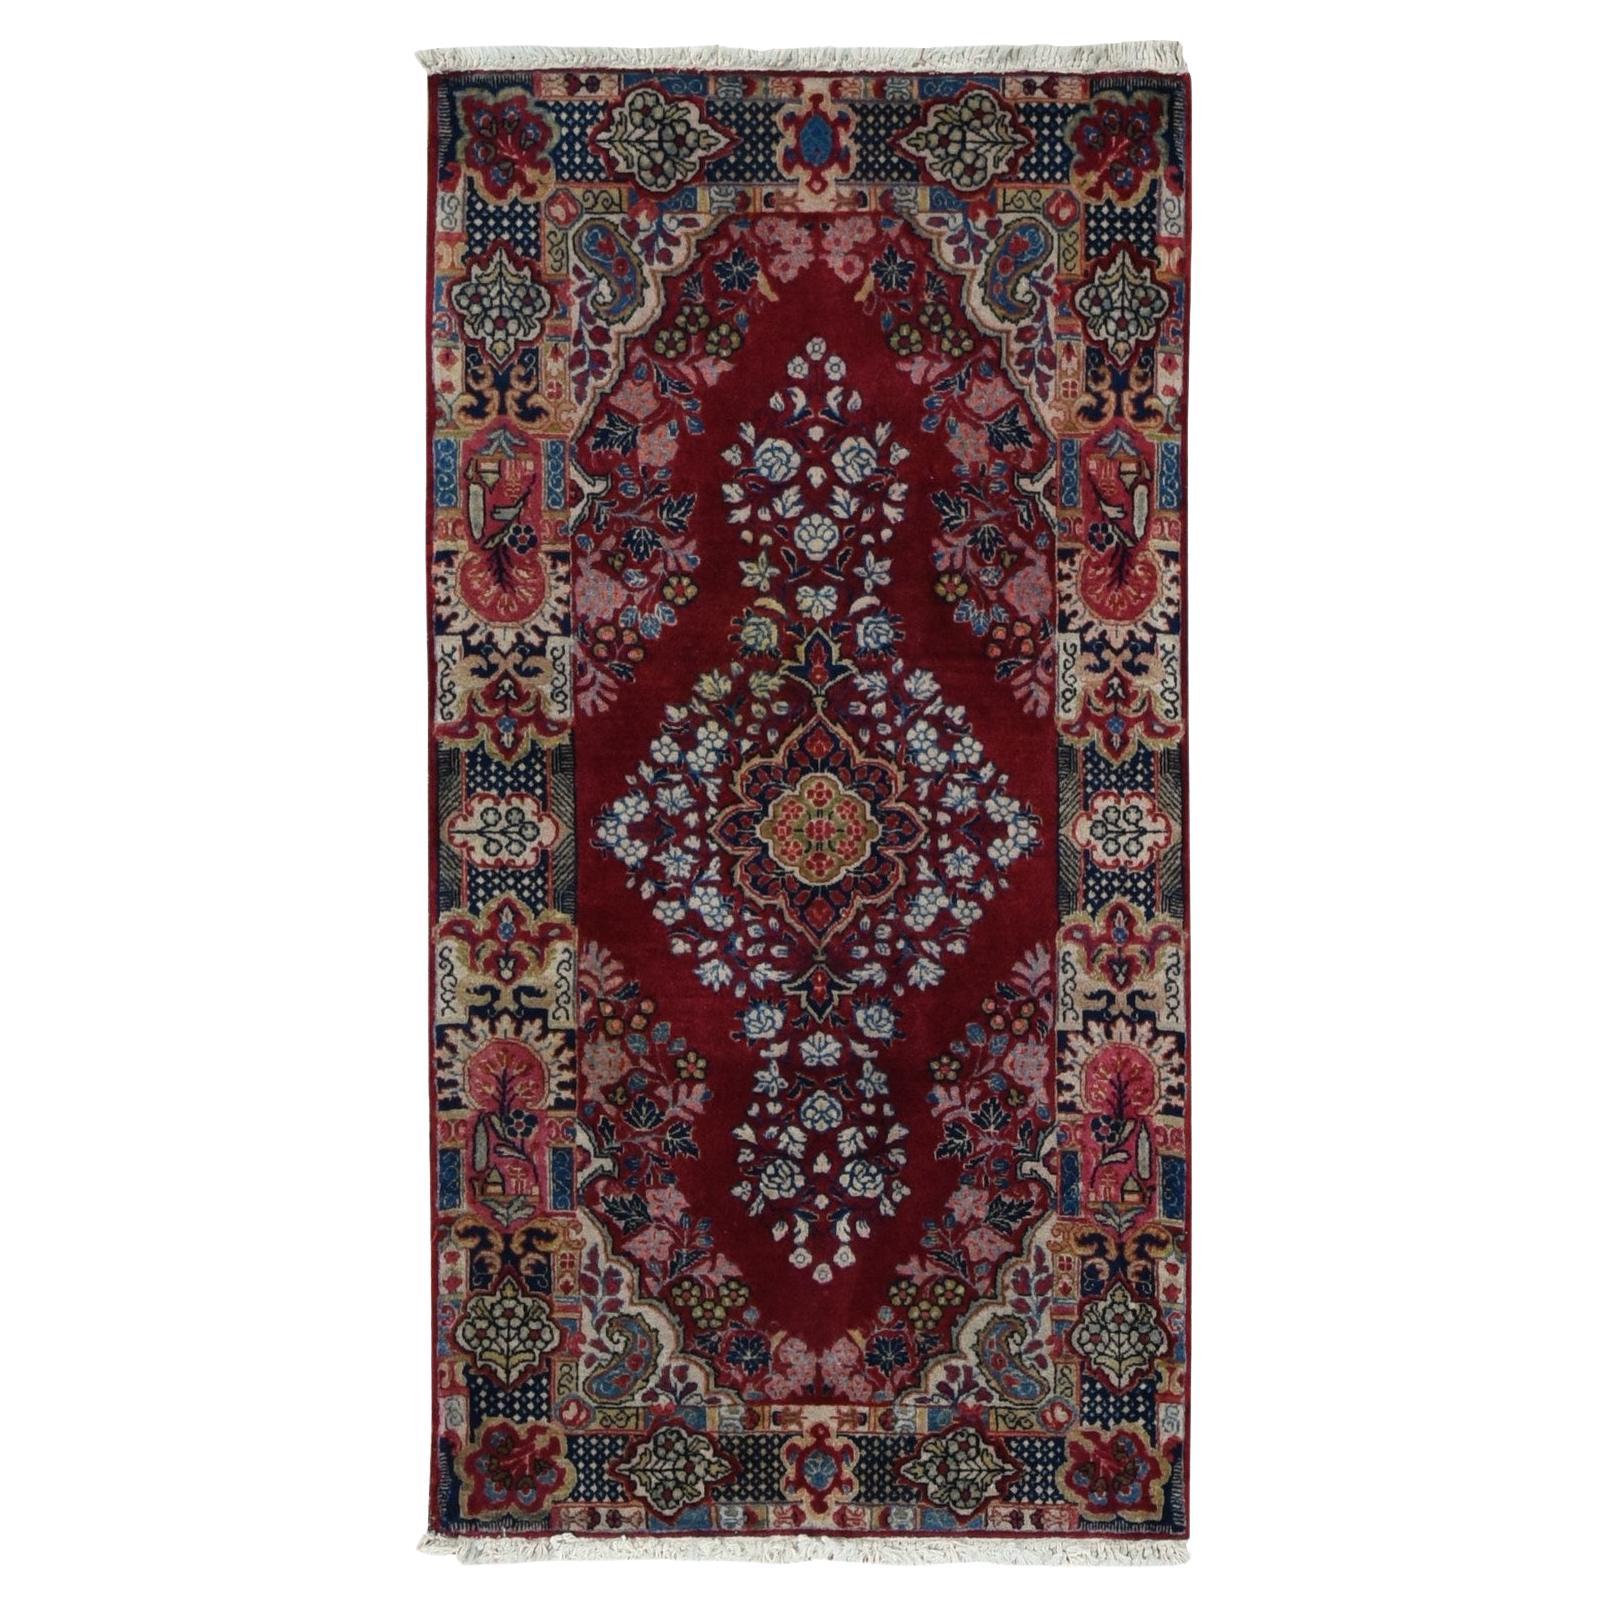 Roter antiker persischer Sarouk-Teppich in Rot, voller Flor, sauber und weich, handgeknüpft, 2'6"x4'10"